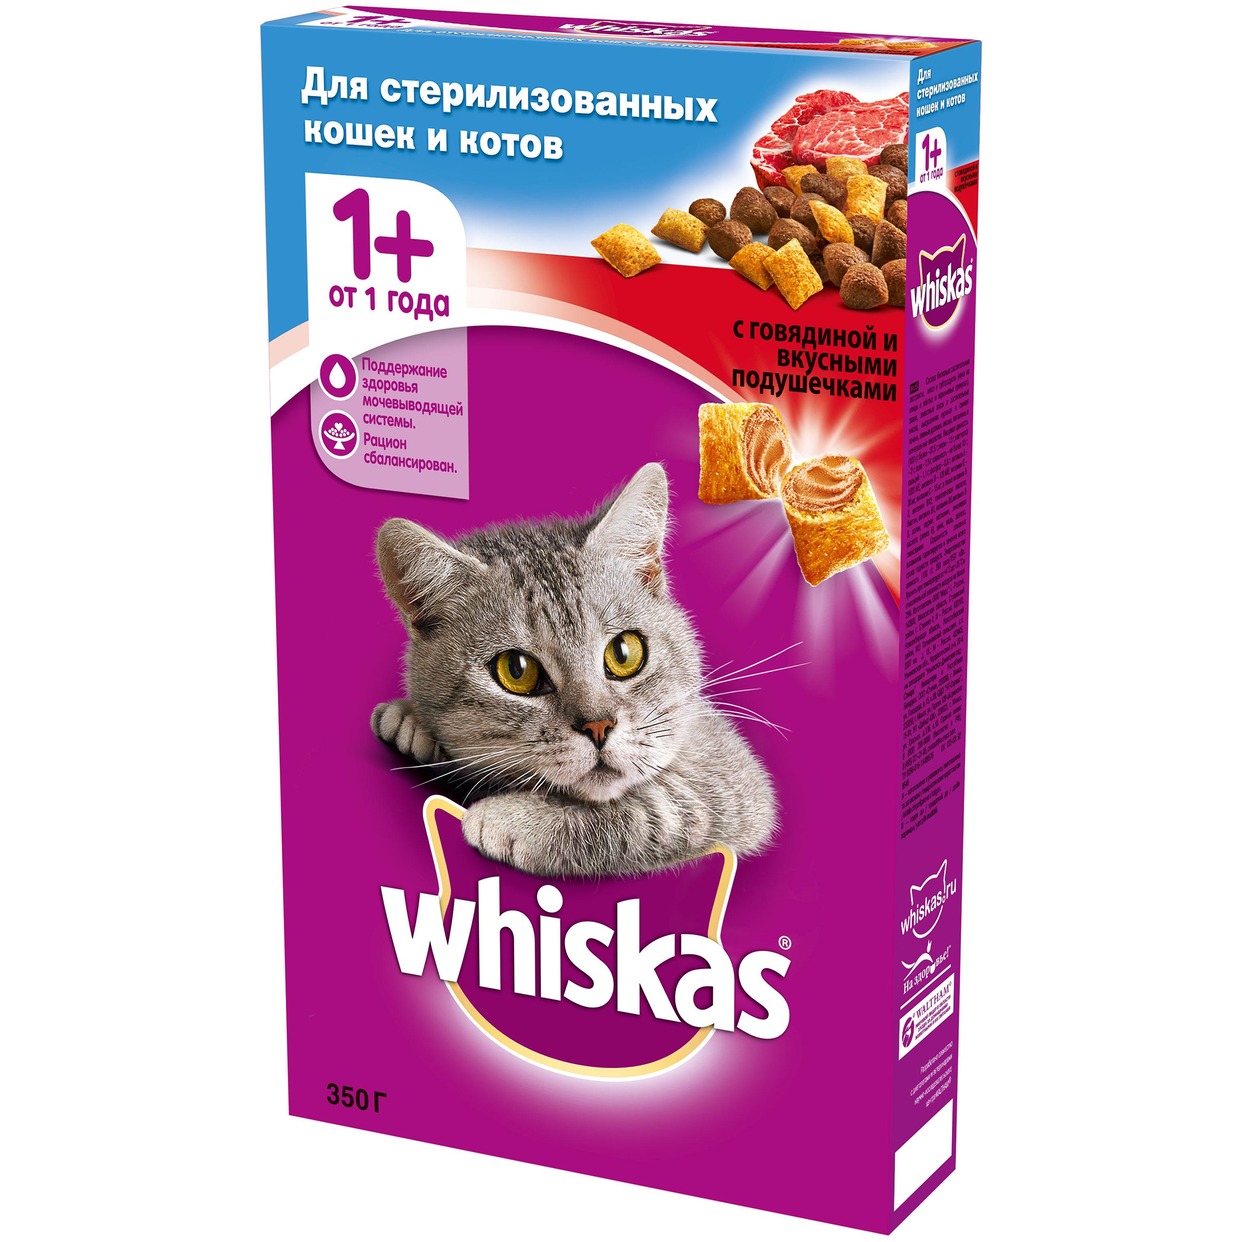 Корм для кошек Whiskas, сухой, говядина, 350 г по акции в Пятерочке